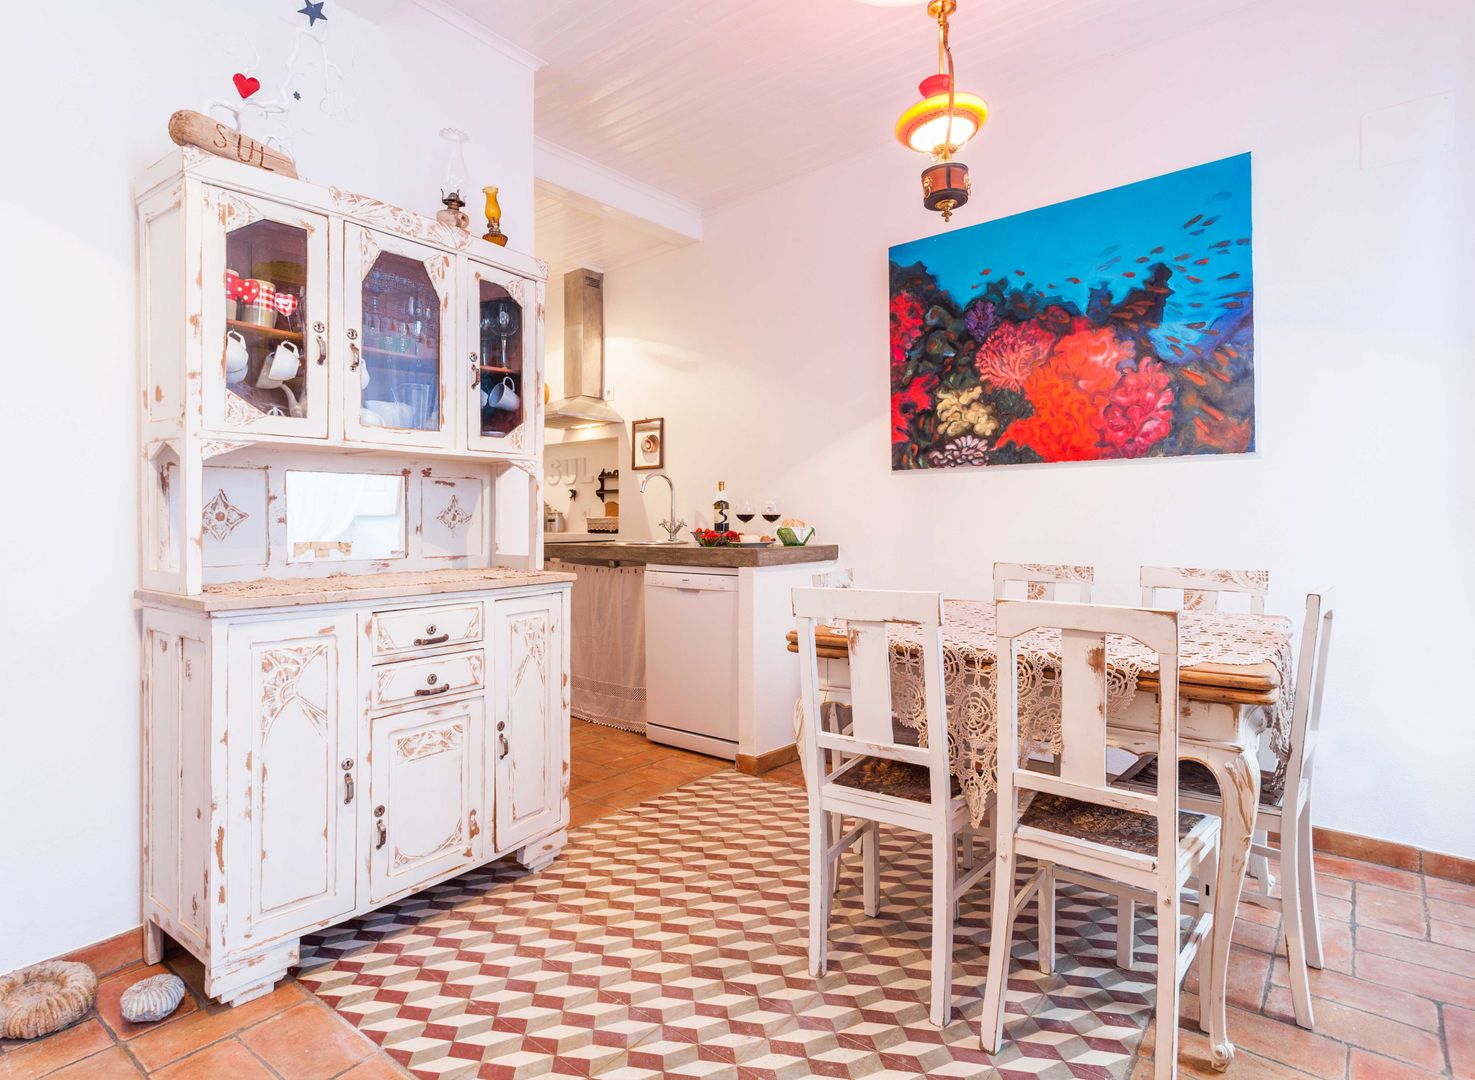 Casa Sul, um lugar onde se sente a alma portuguesa. , alma portuguesa alma portuguesa Cozinhas rústicas